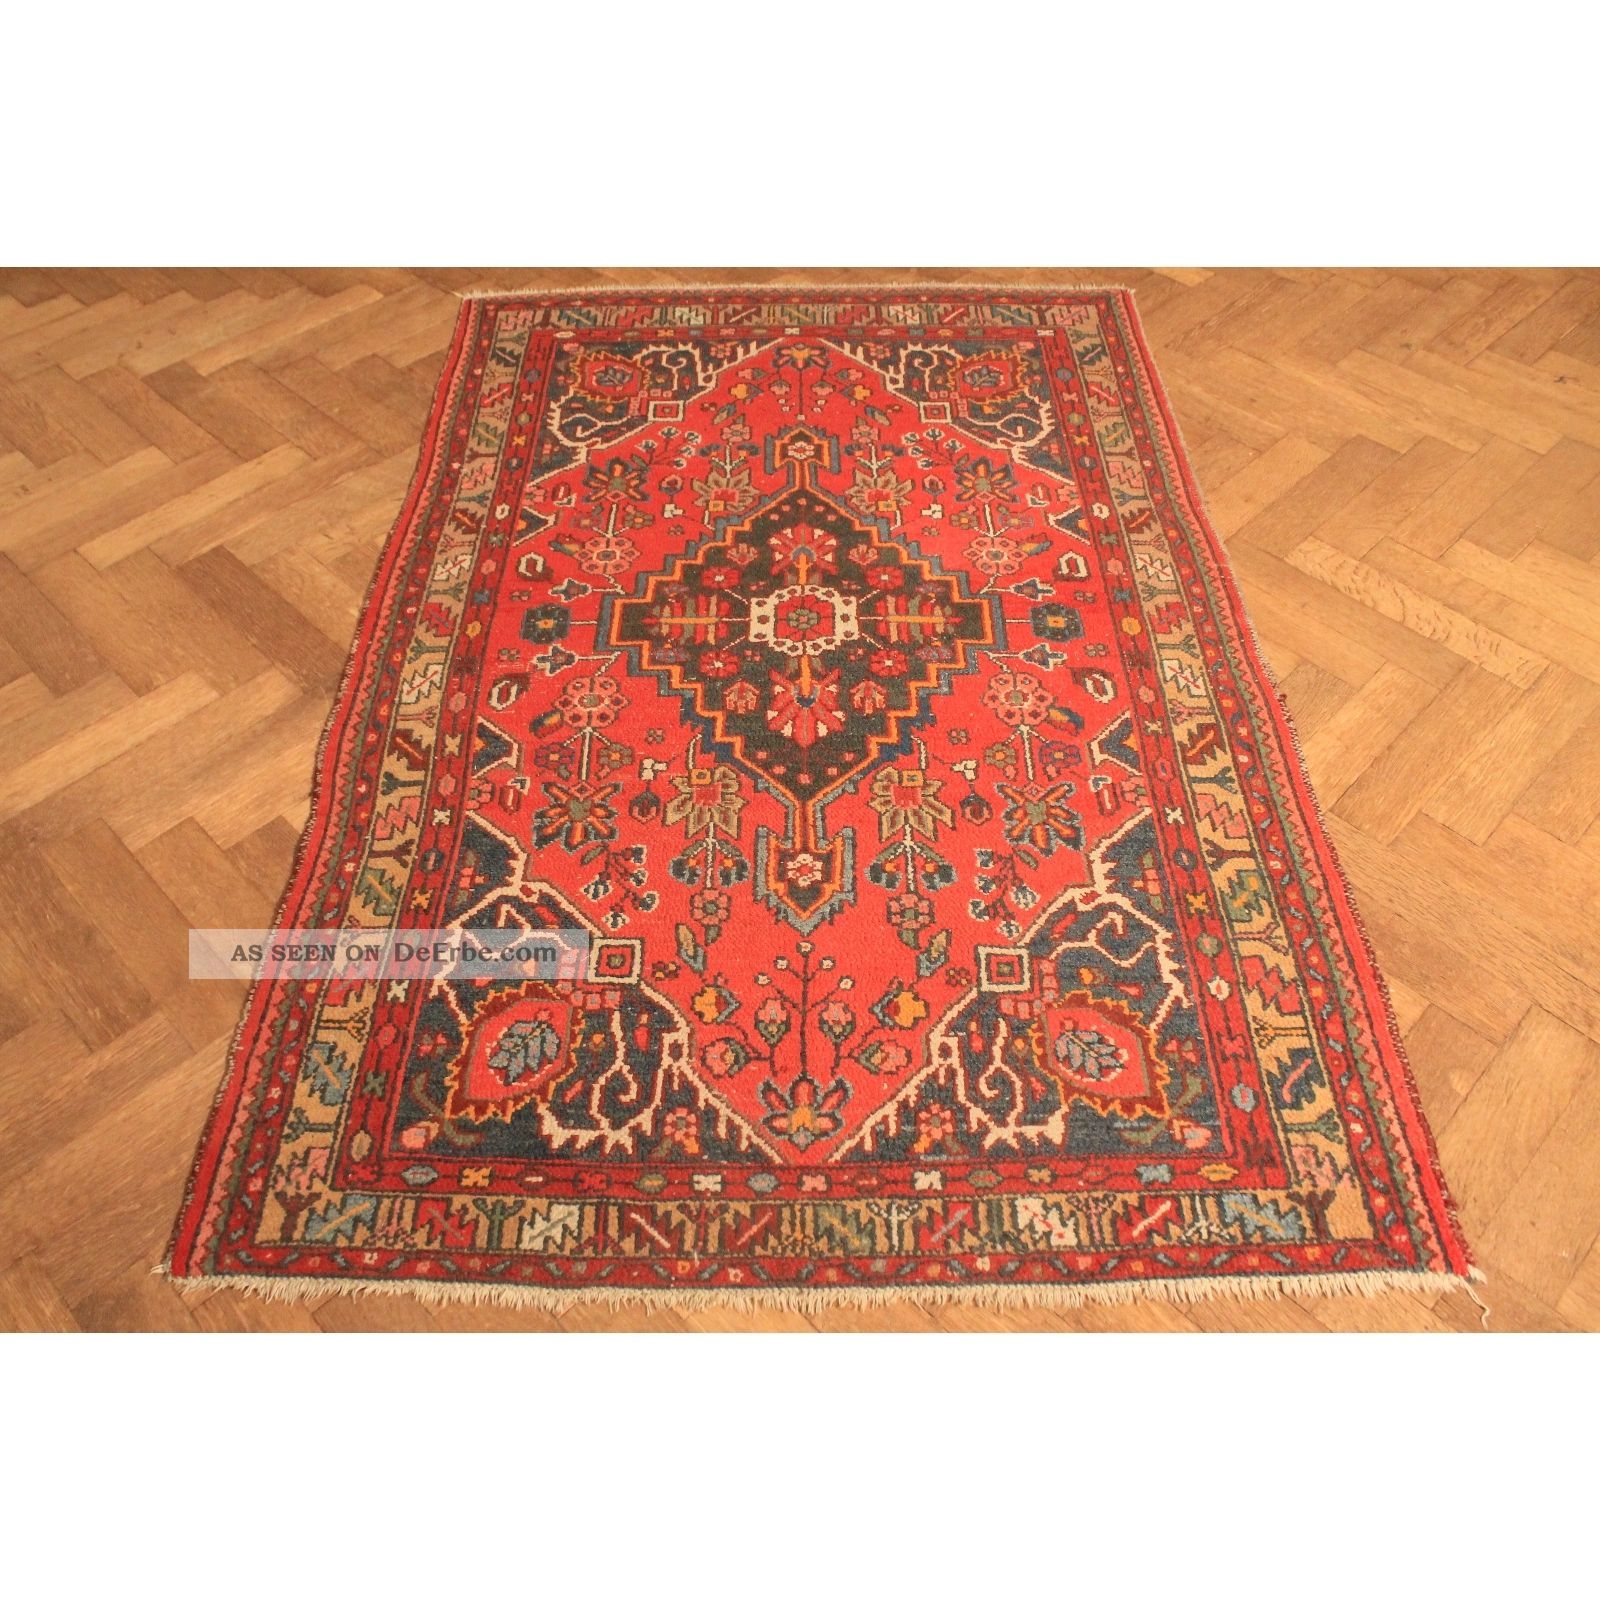 Alt Handgeknüpft Orient Teppich Malaya Kurde Old Rug Carpet Tappeto 200x130cm Teppiche & Flachgewebe Bild